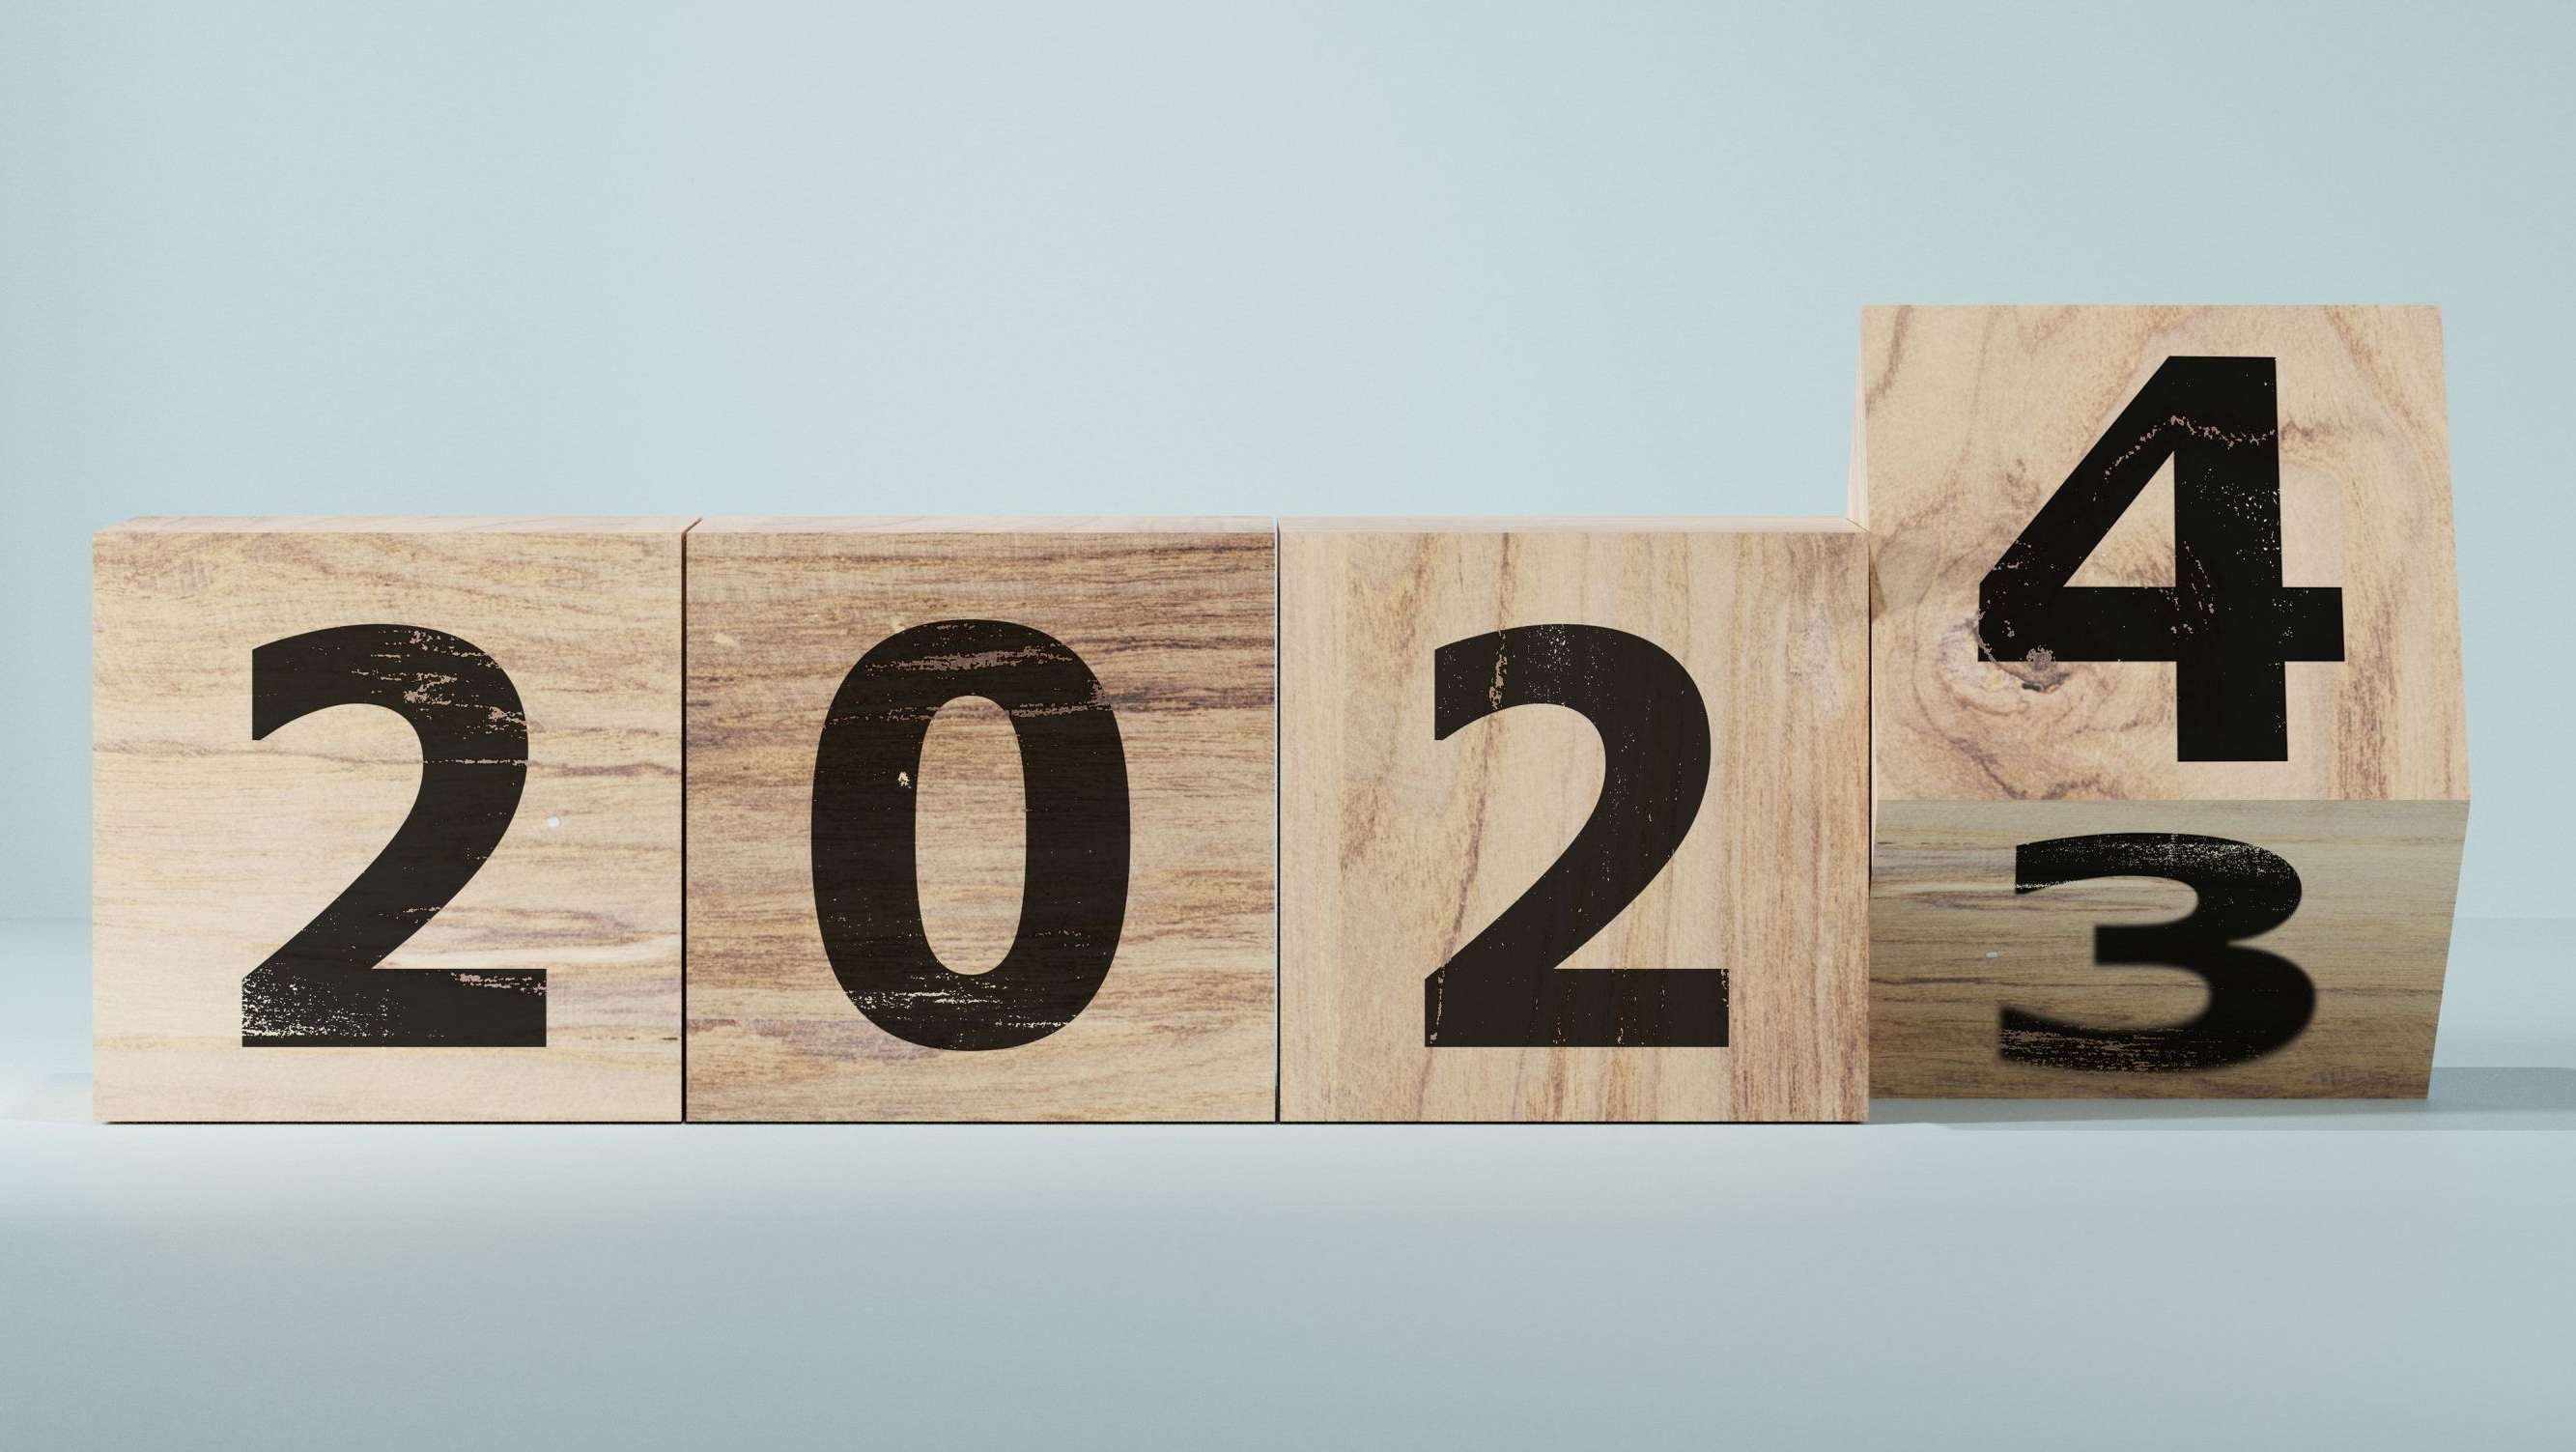 Jahreszahl 2023, bzw. 2024 auf vier Holzwürfel gedruckt, letzte Zahl dreht gerade von der 3 auf die 4.